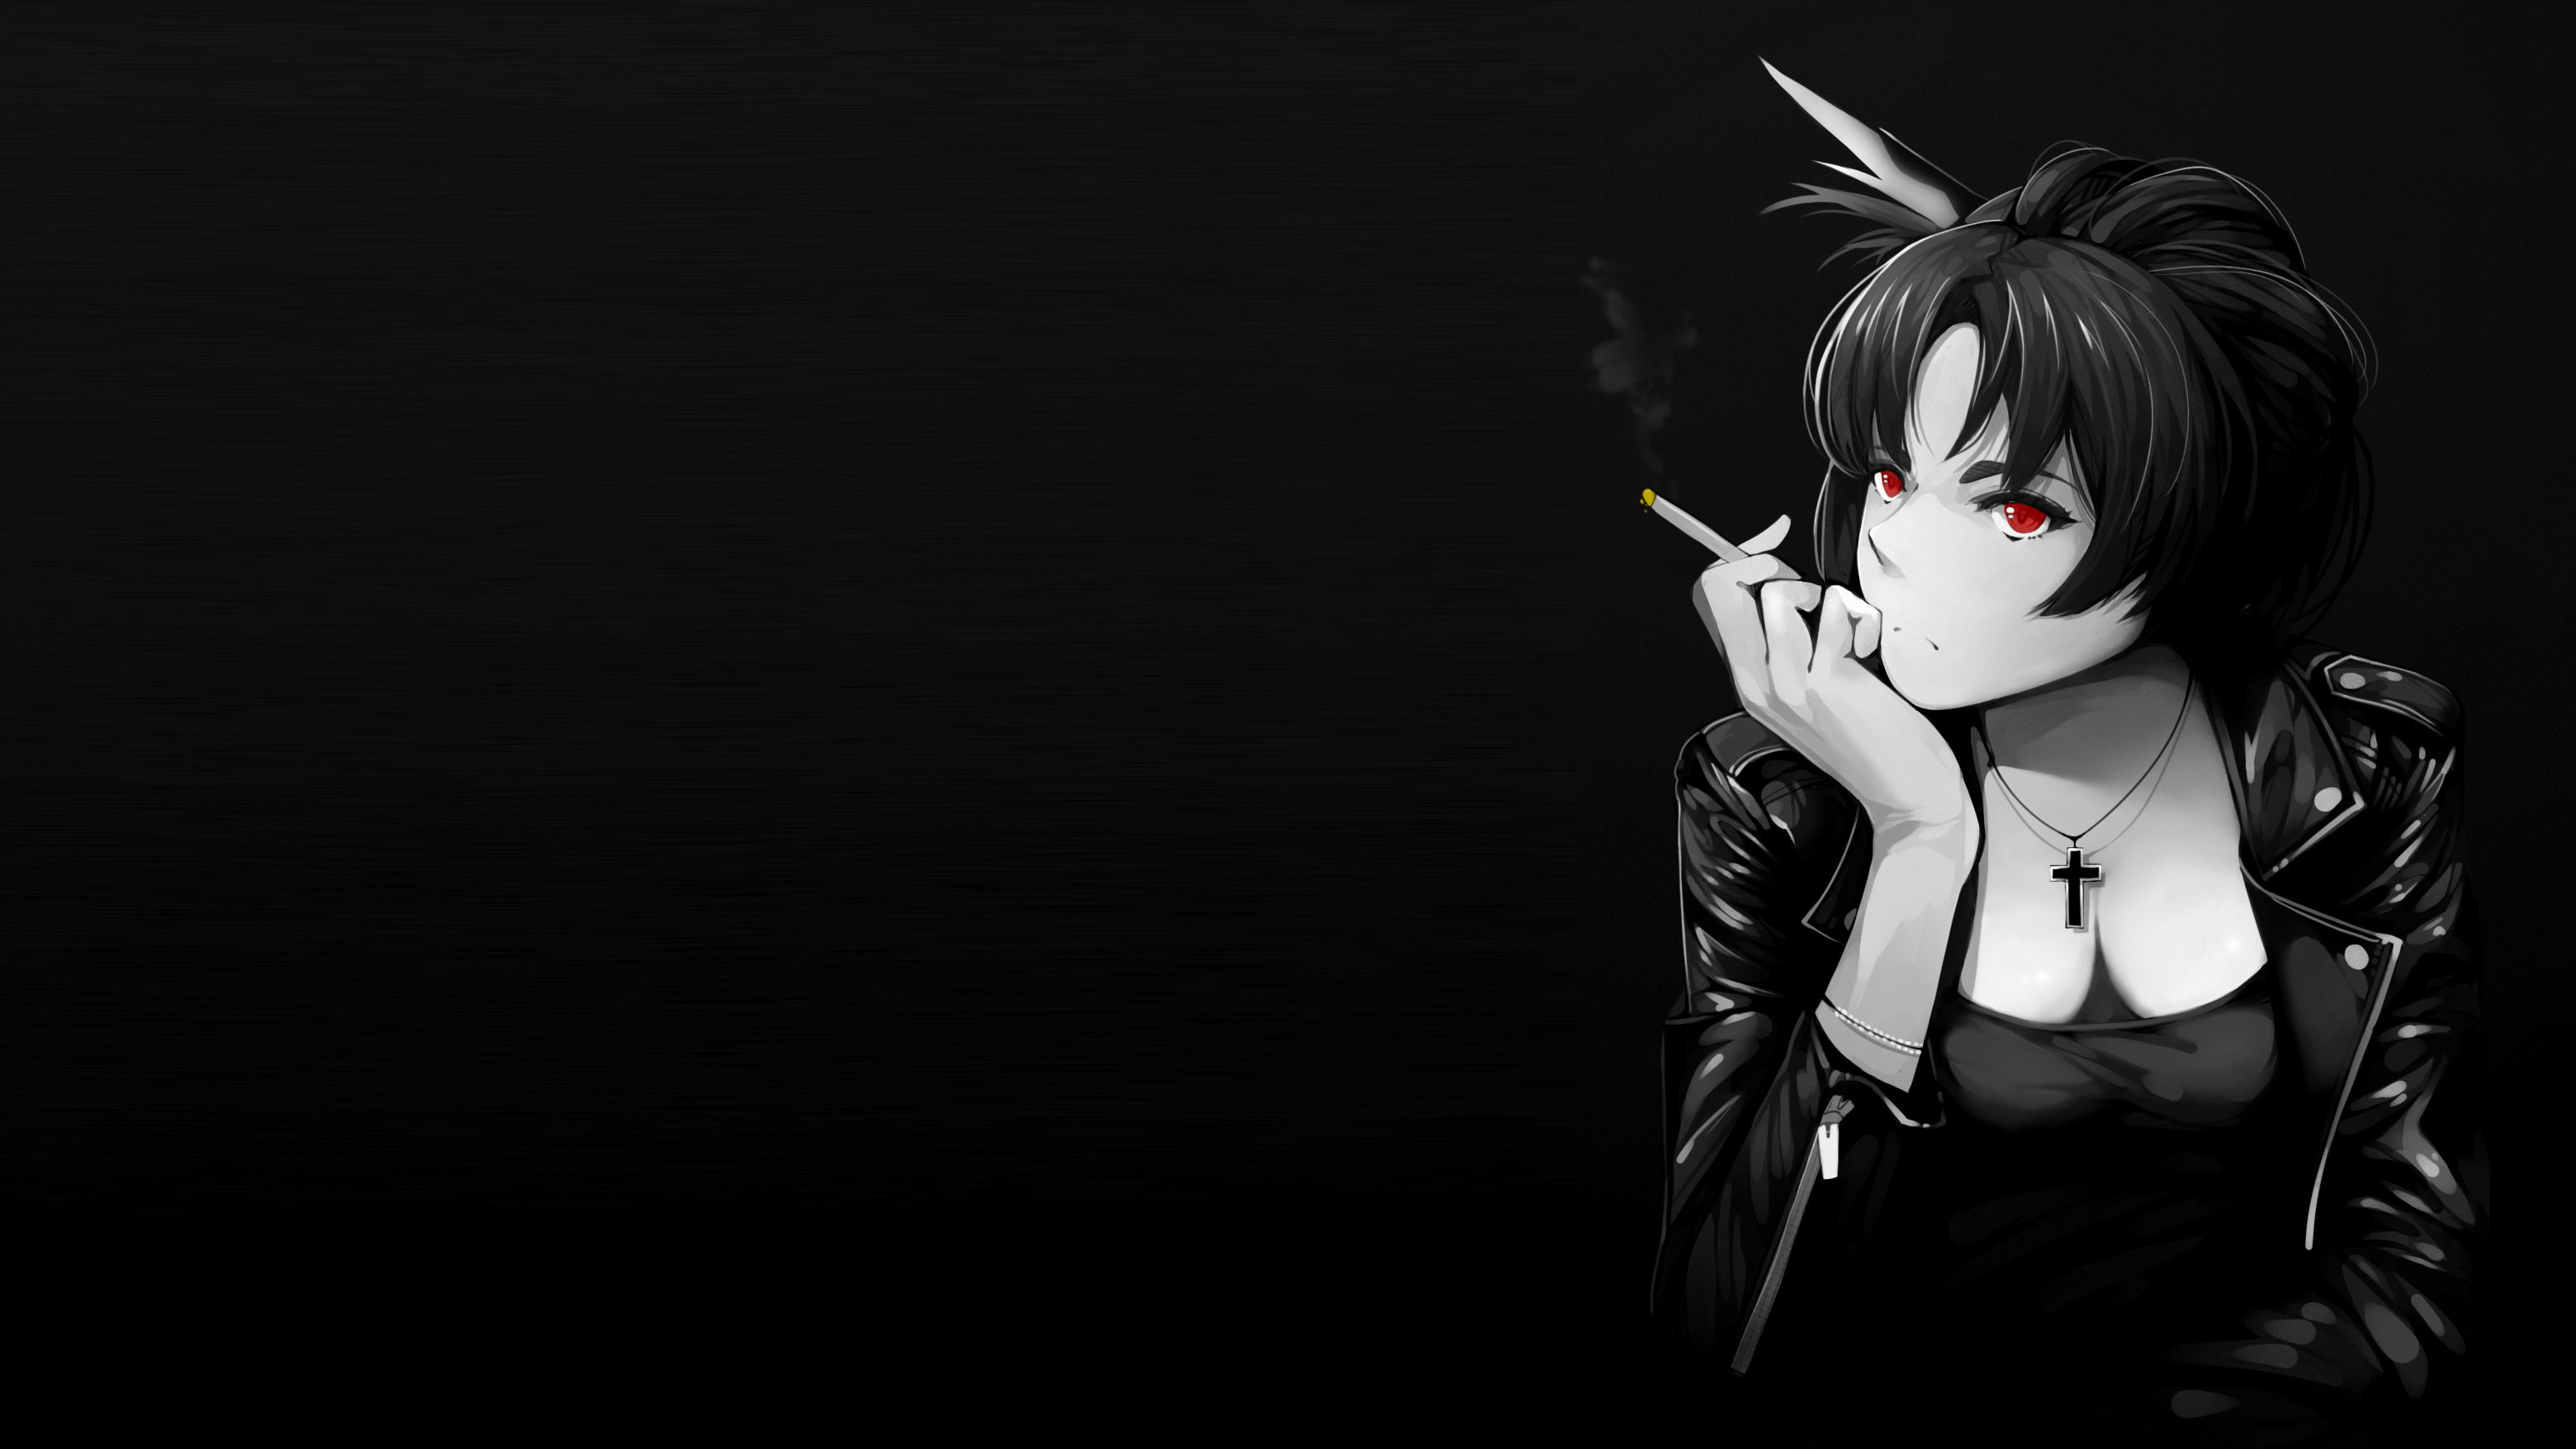 Anime 3120x1755 anime girls selective coloring black background simple background dark background cigarettes smoke